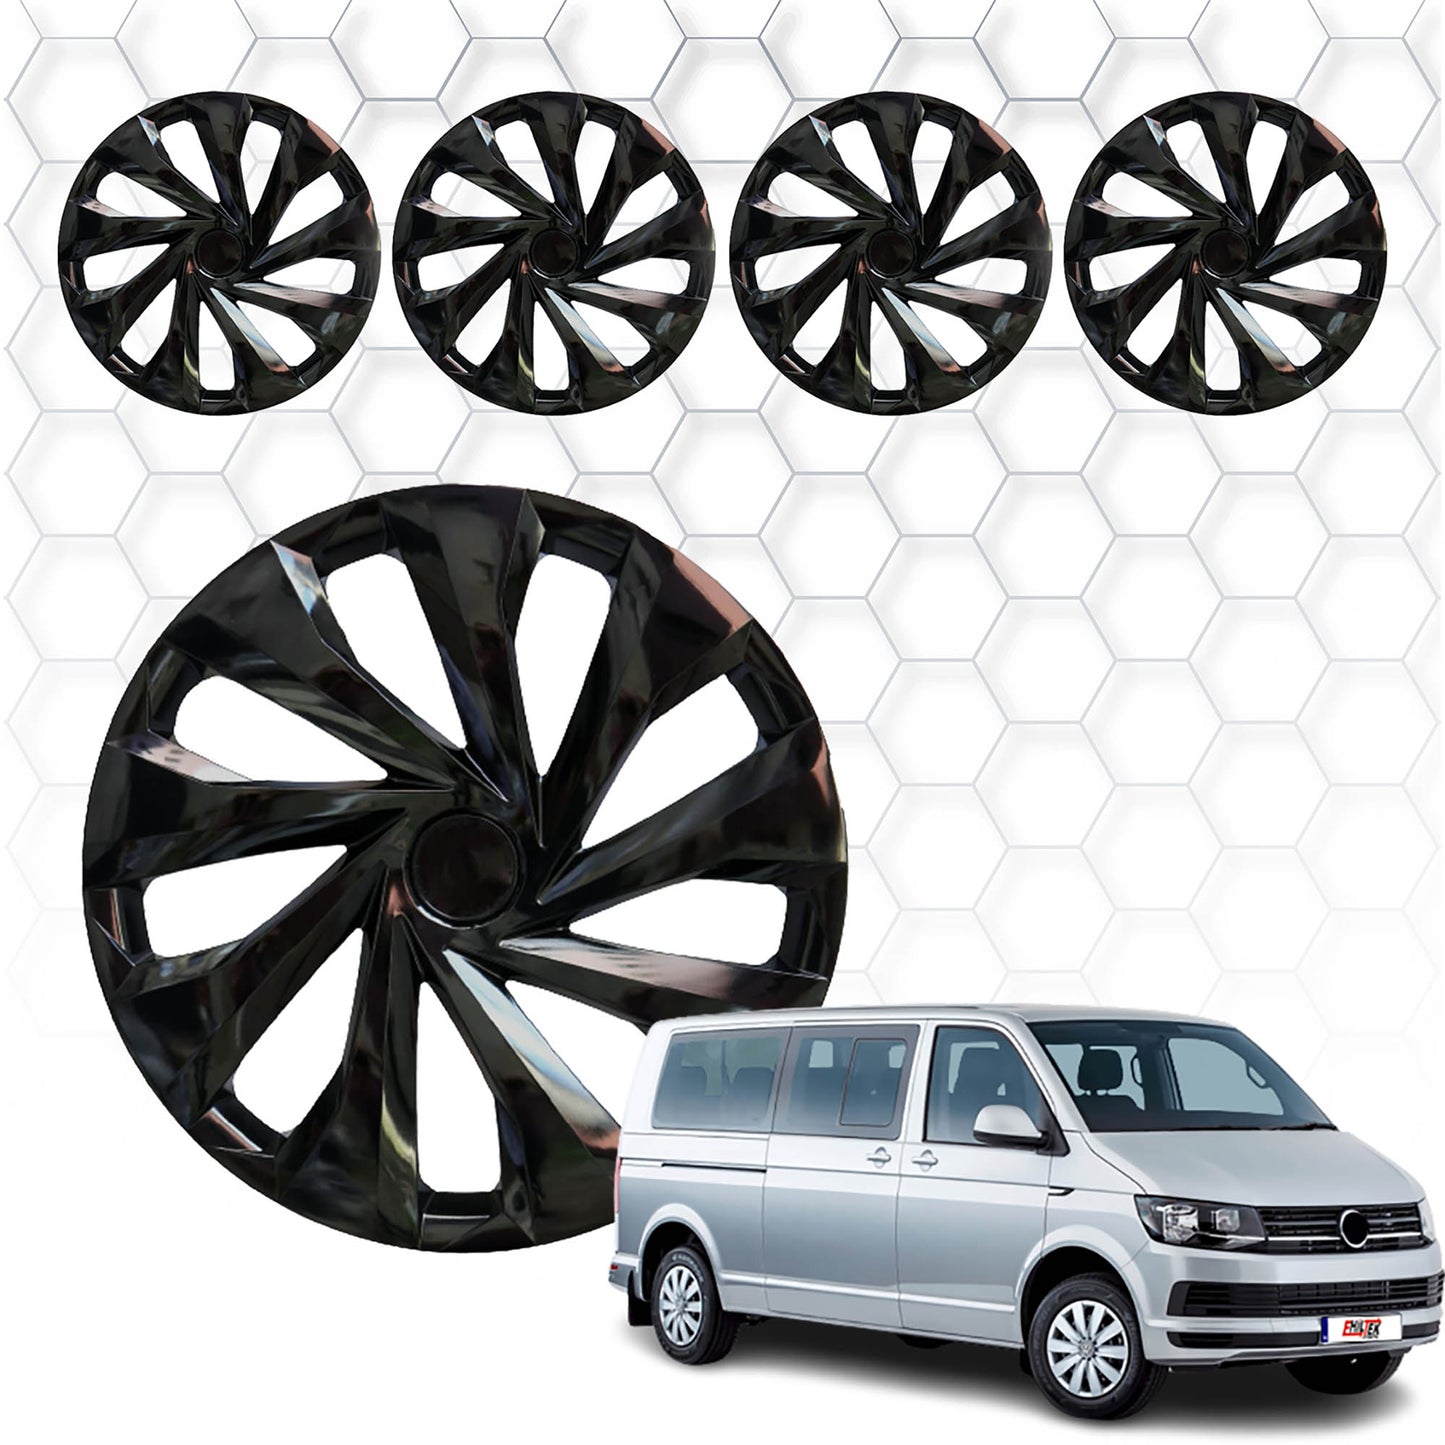 Volkswagen T5.5 Caravelle Jant Kapağı Aksesuarları Detaylı Resimleri, Kampanya bilgileri ve fiyatı - 1